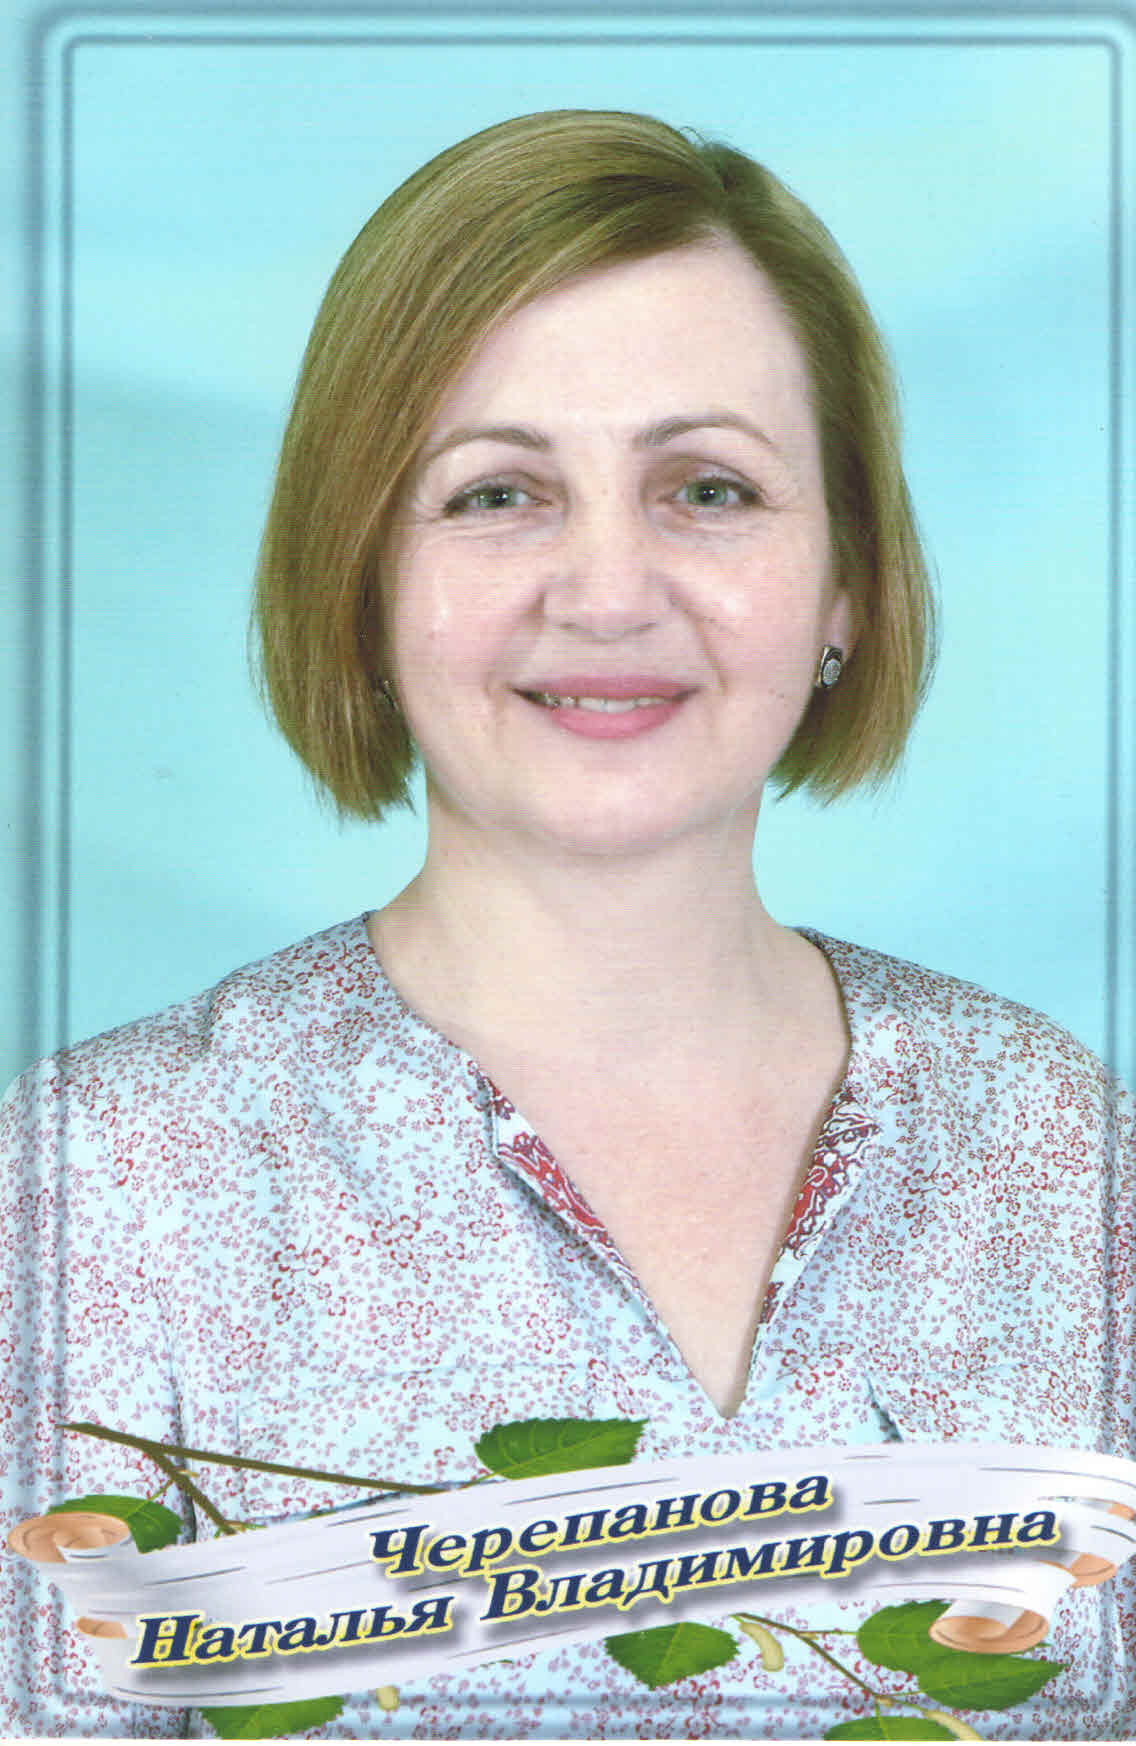 Черепанова Наталья Владимировна.